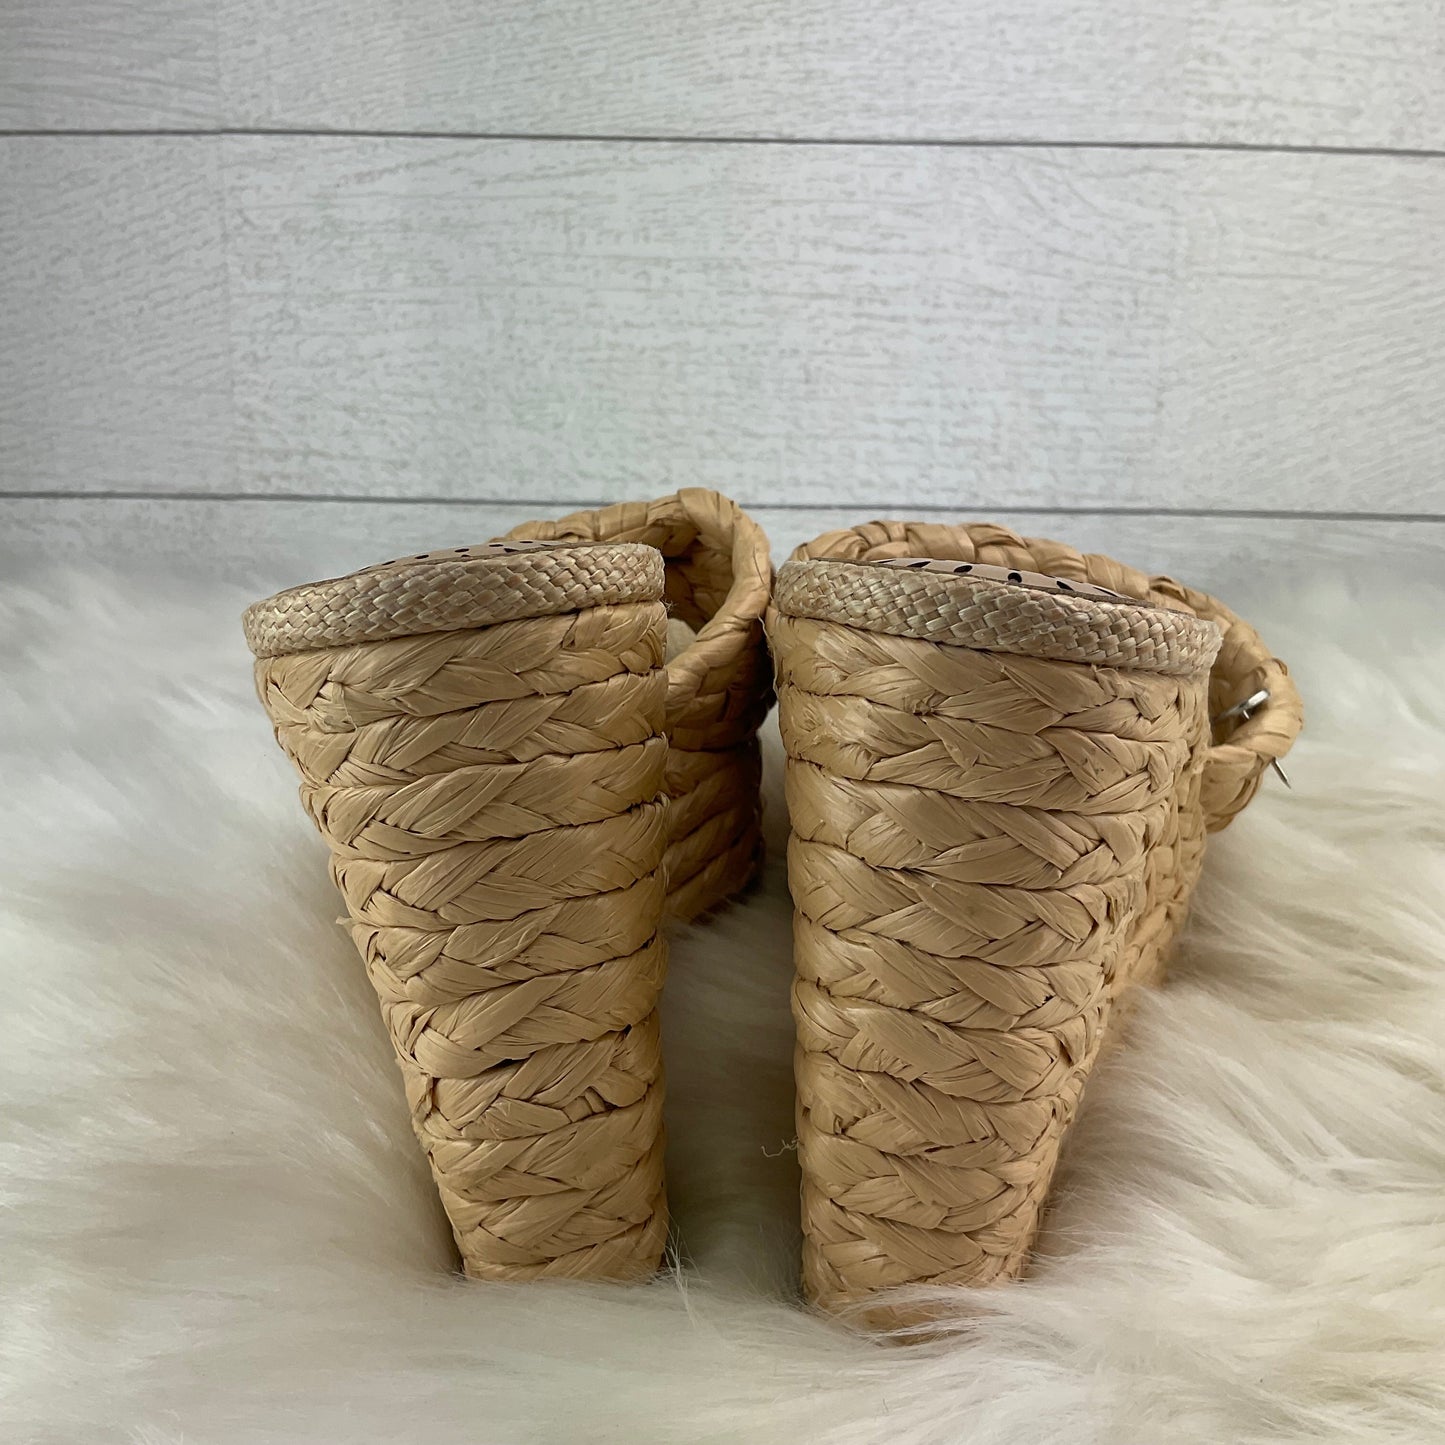 Cream Sandals Heels Block Antonio Melani, Size 7.5